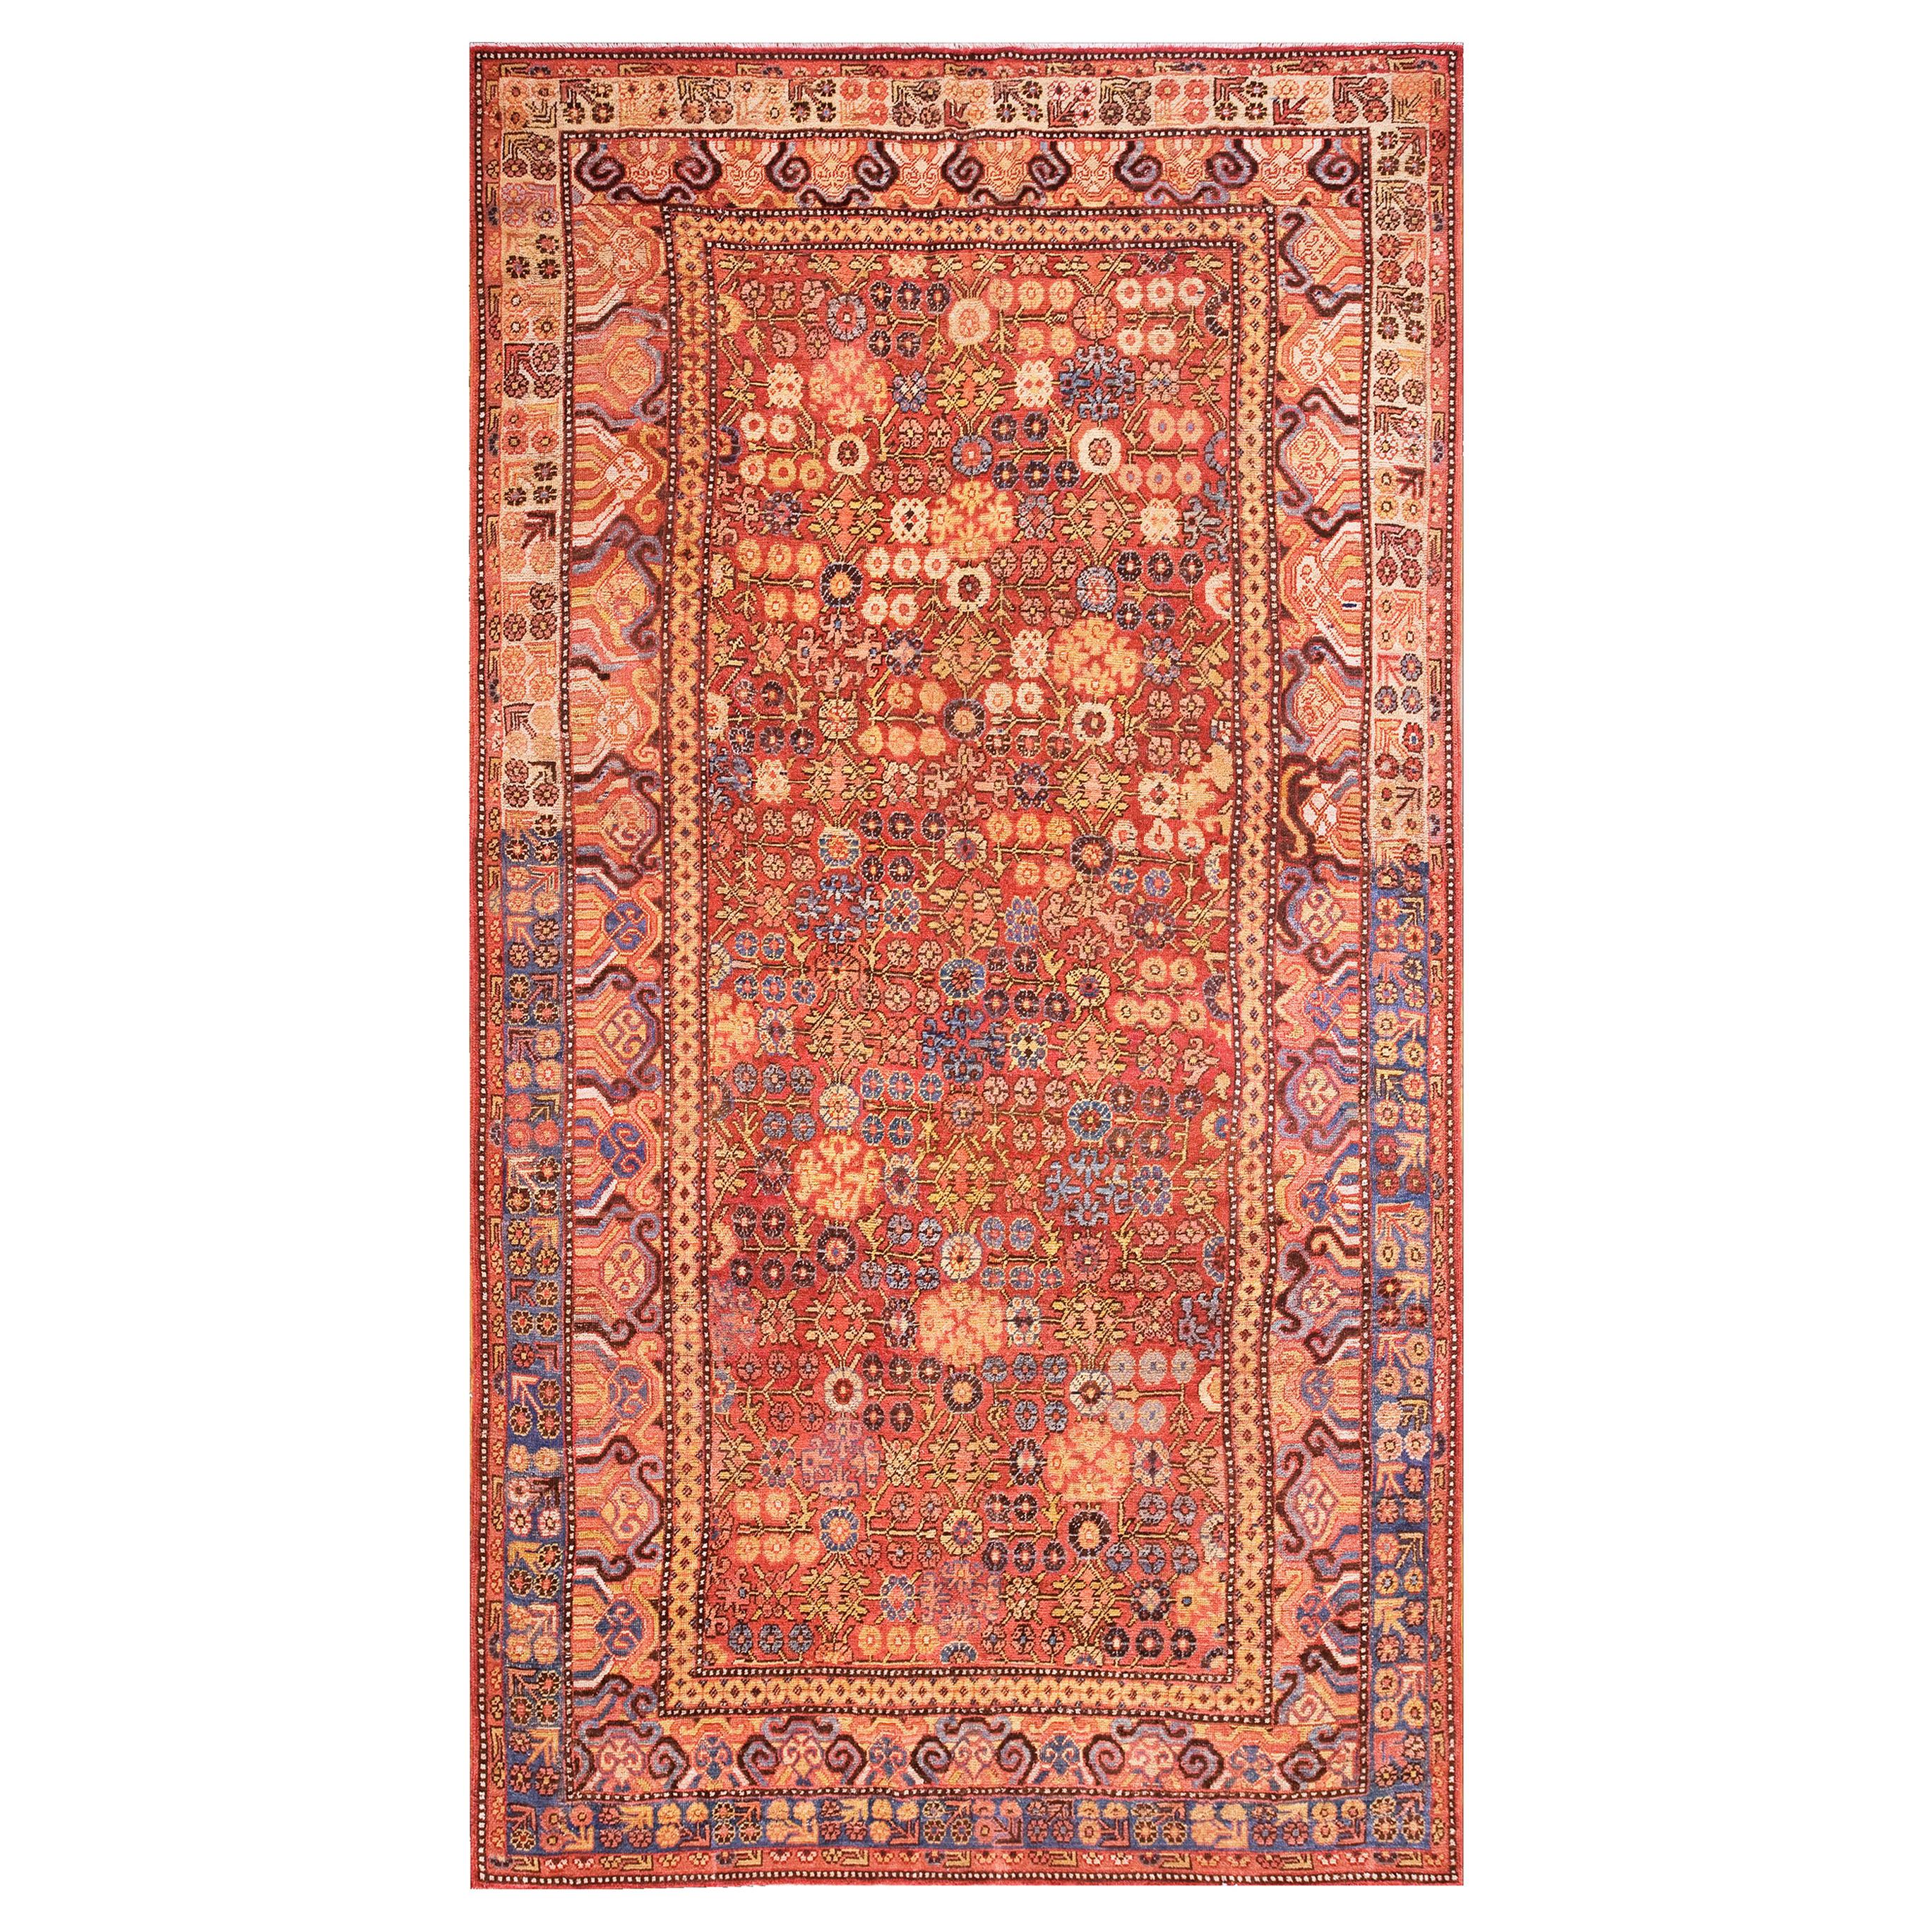 Zentralasiatischer chinesischer Khotan-Teppich des späten 18. Jahrhunderts (6'6" x 11'6" - 198 x 355) im Angebot